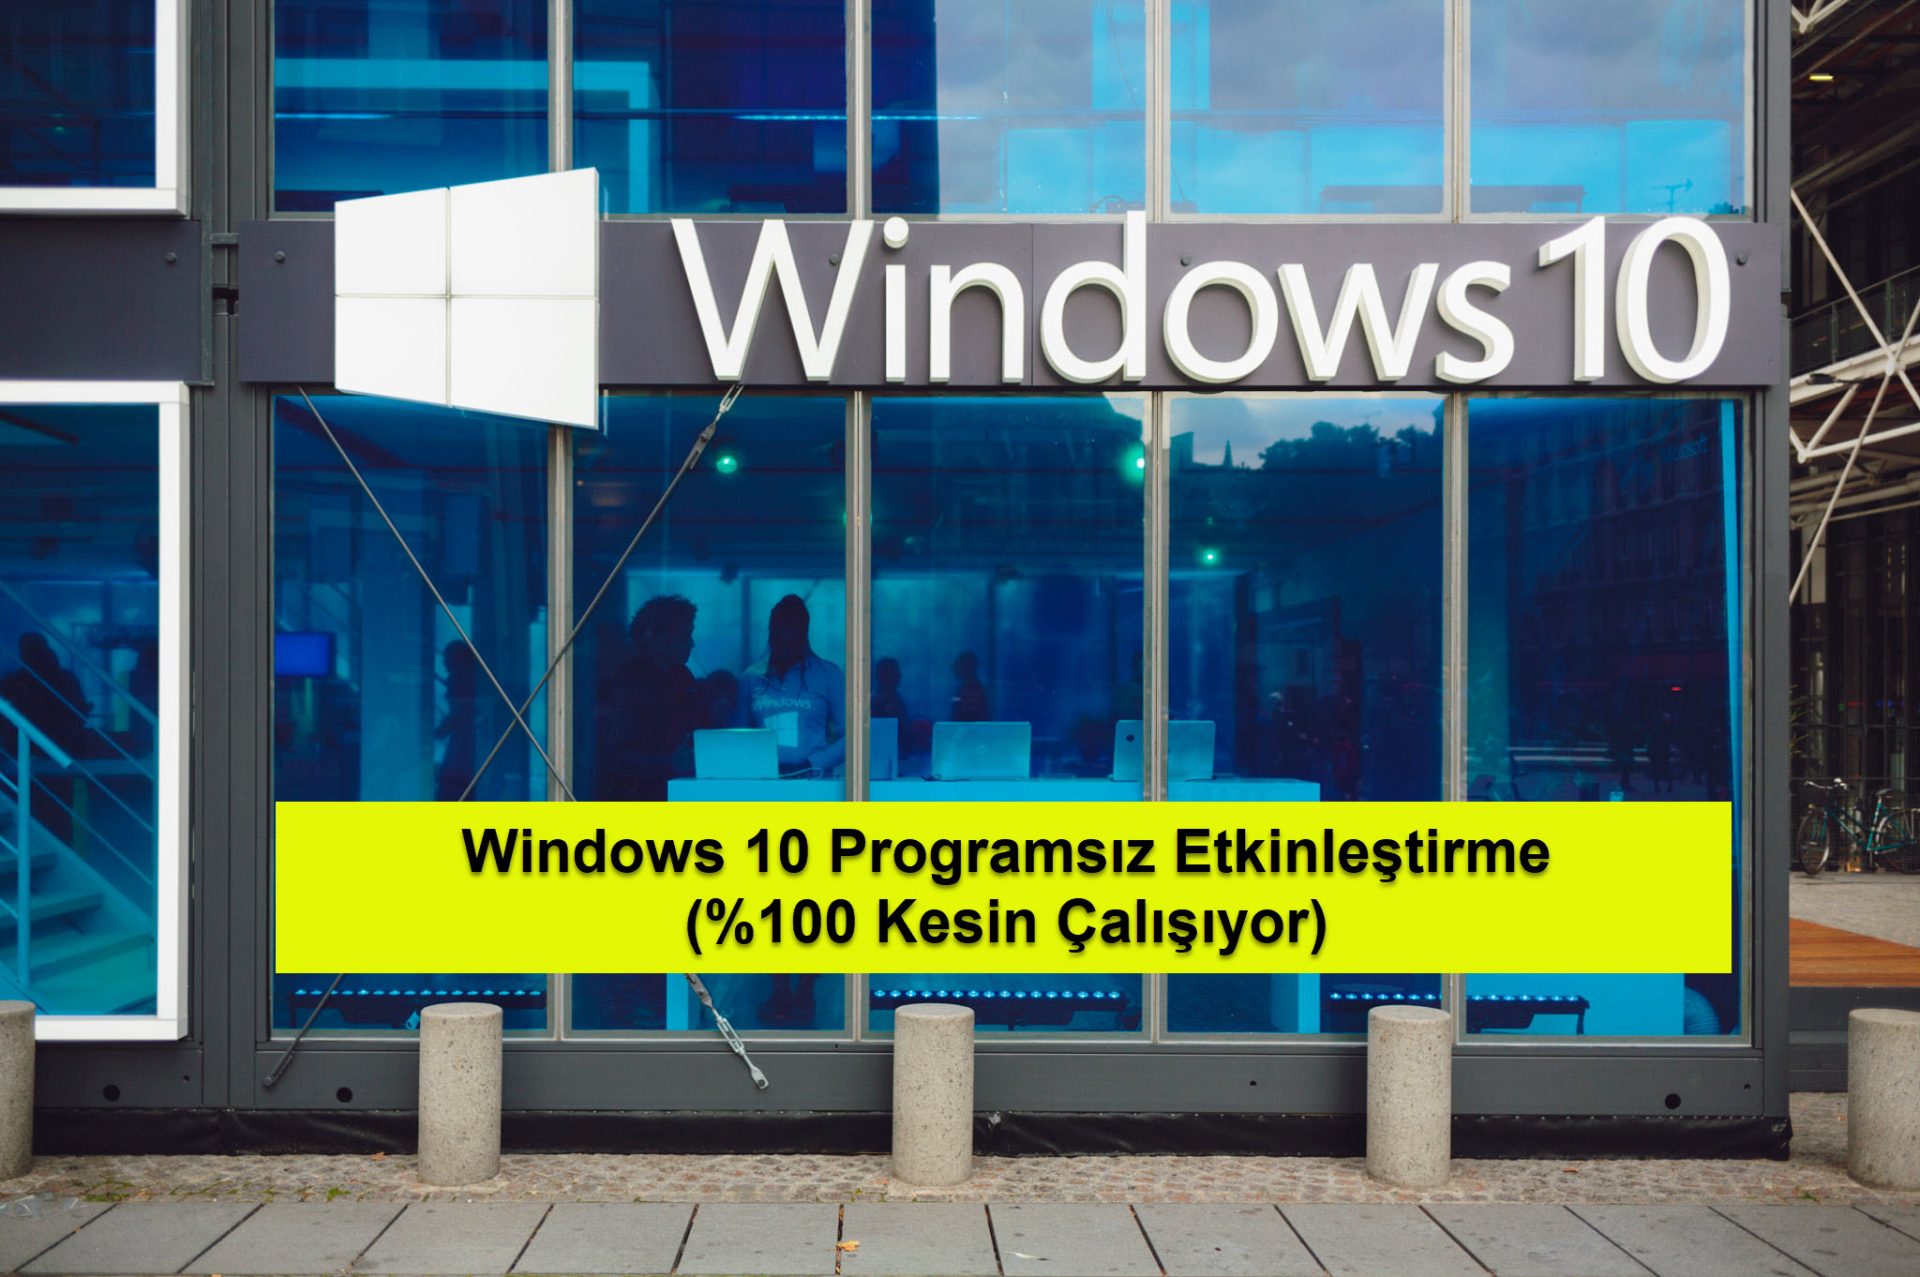 Windows 10 Programsiz Etkinlestirme 5